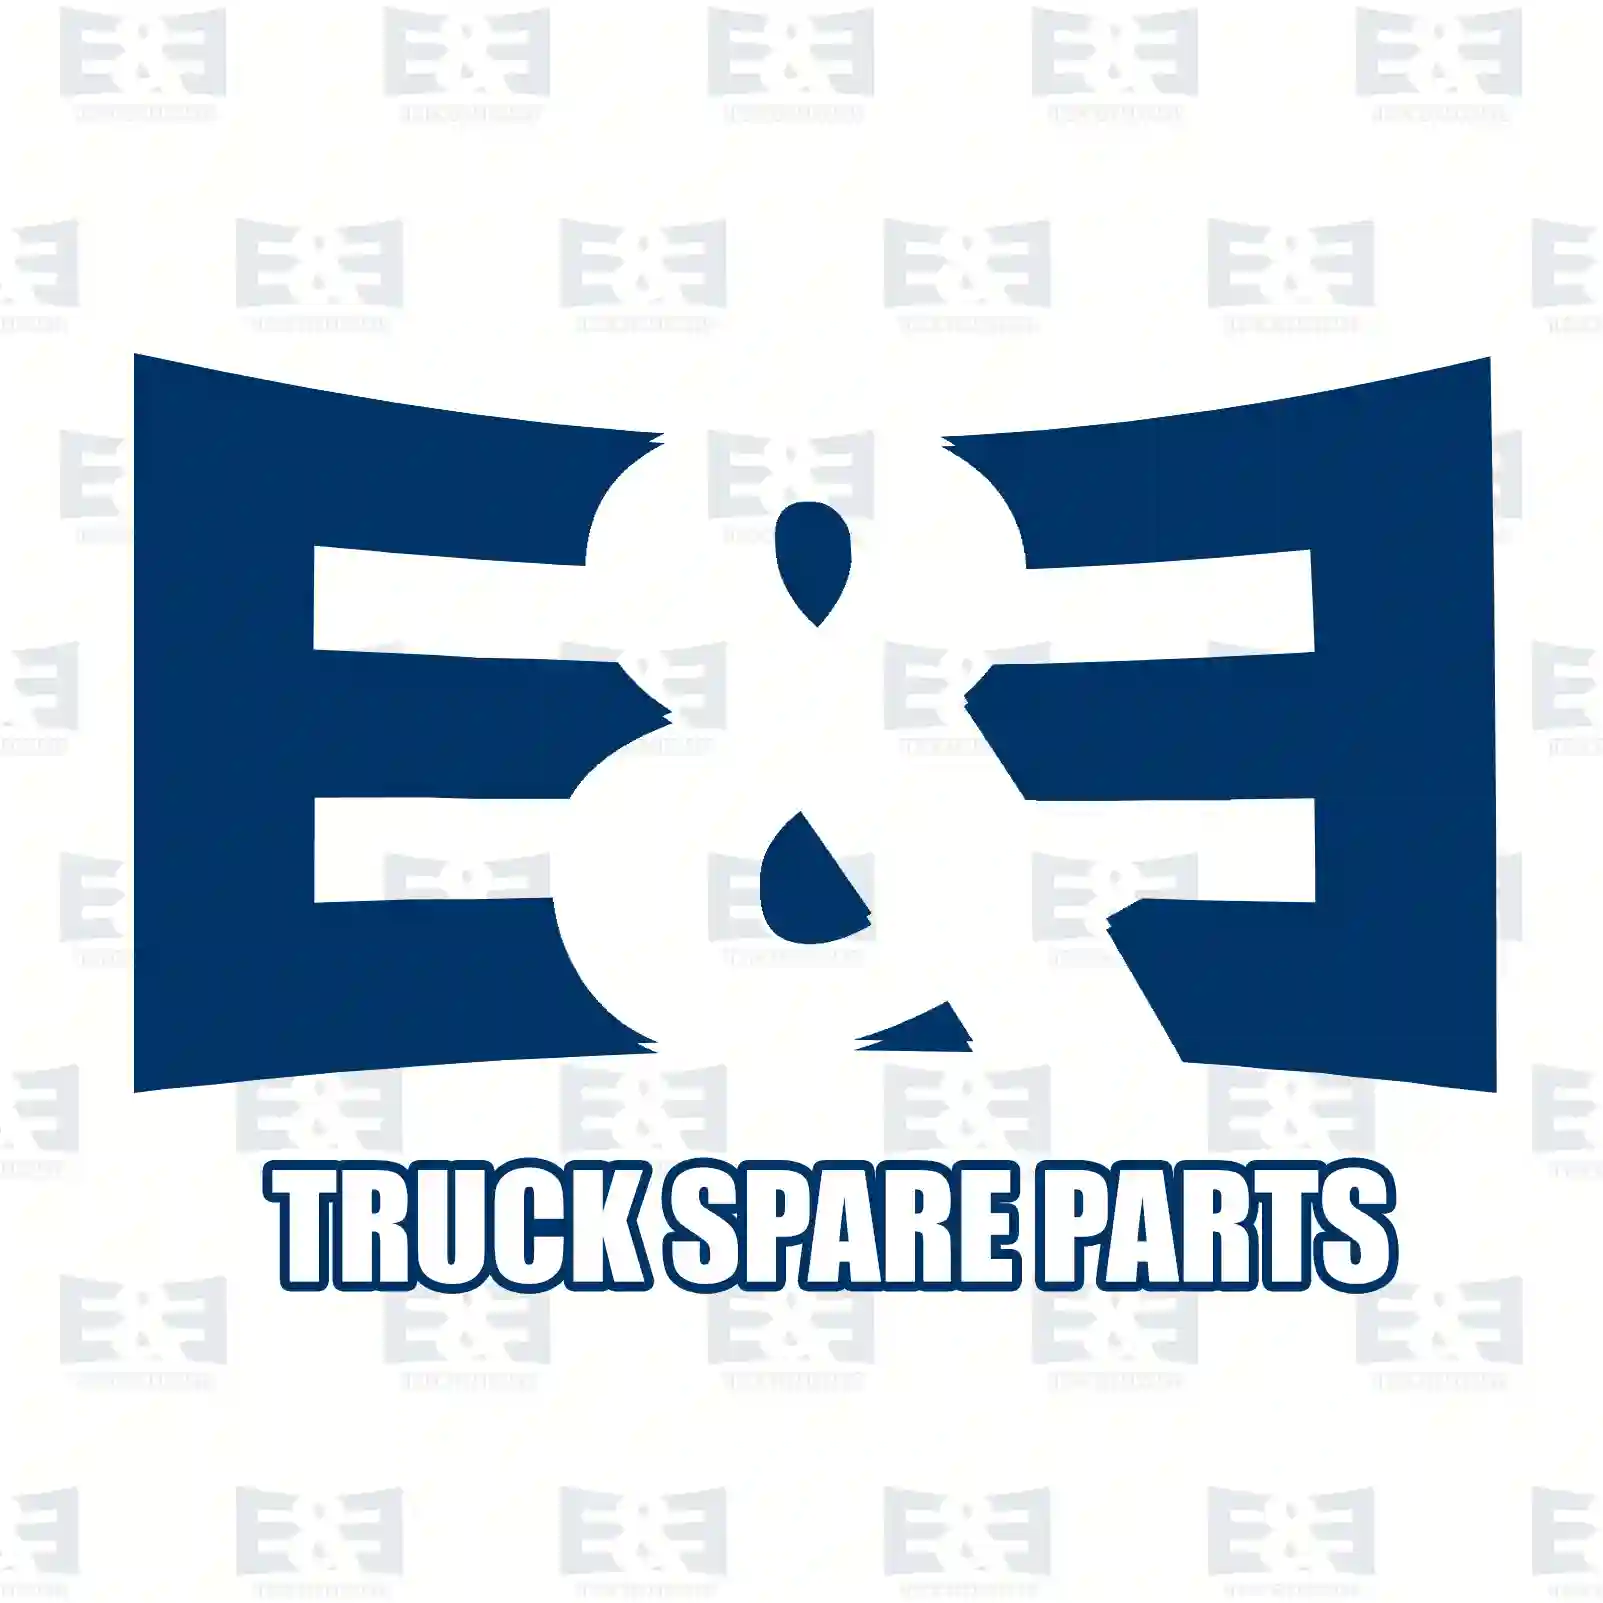 Propeller shaft, 2E2276720, 99455573, 9945557 ||  2E2276720 E&E Truck Spare Parts | Truck Spare Parts, Auotomotive Spare Parts Propeller shaft, 2E2276720, 99455573, 9945557 ||  2E2276720 E&E Truck Spare Parts | Truck Spare Parts, Auotomotive Spare Parts